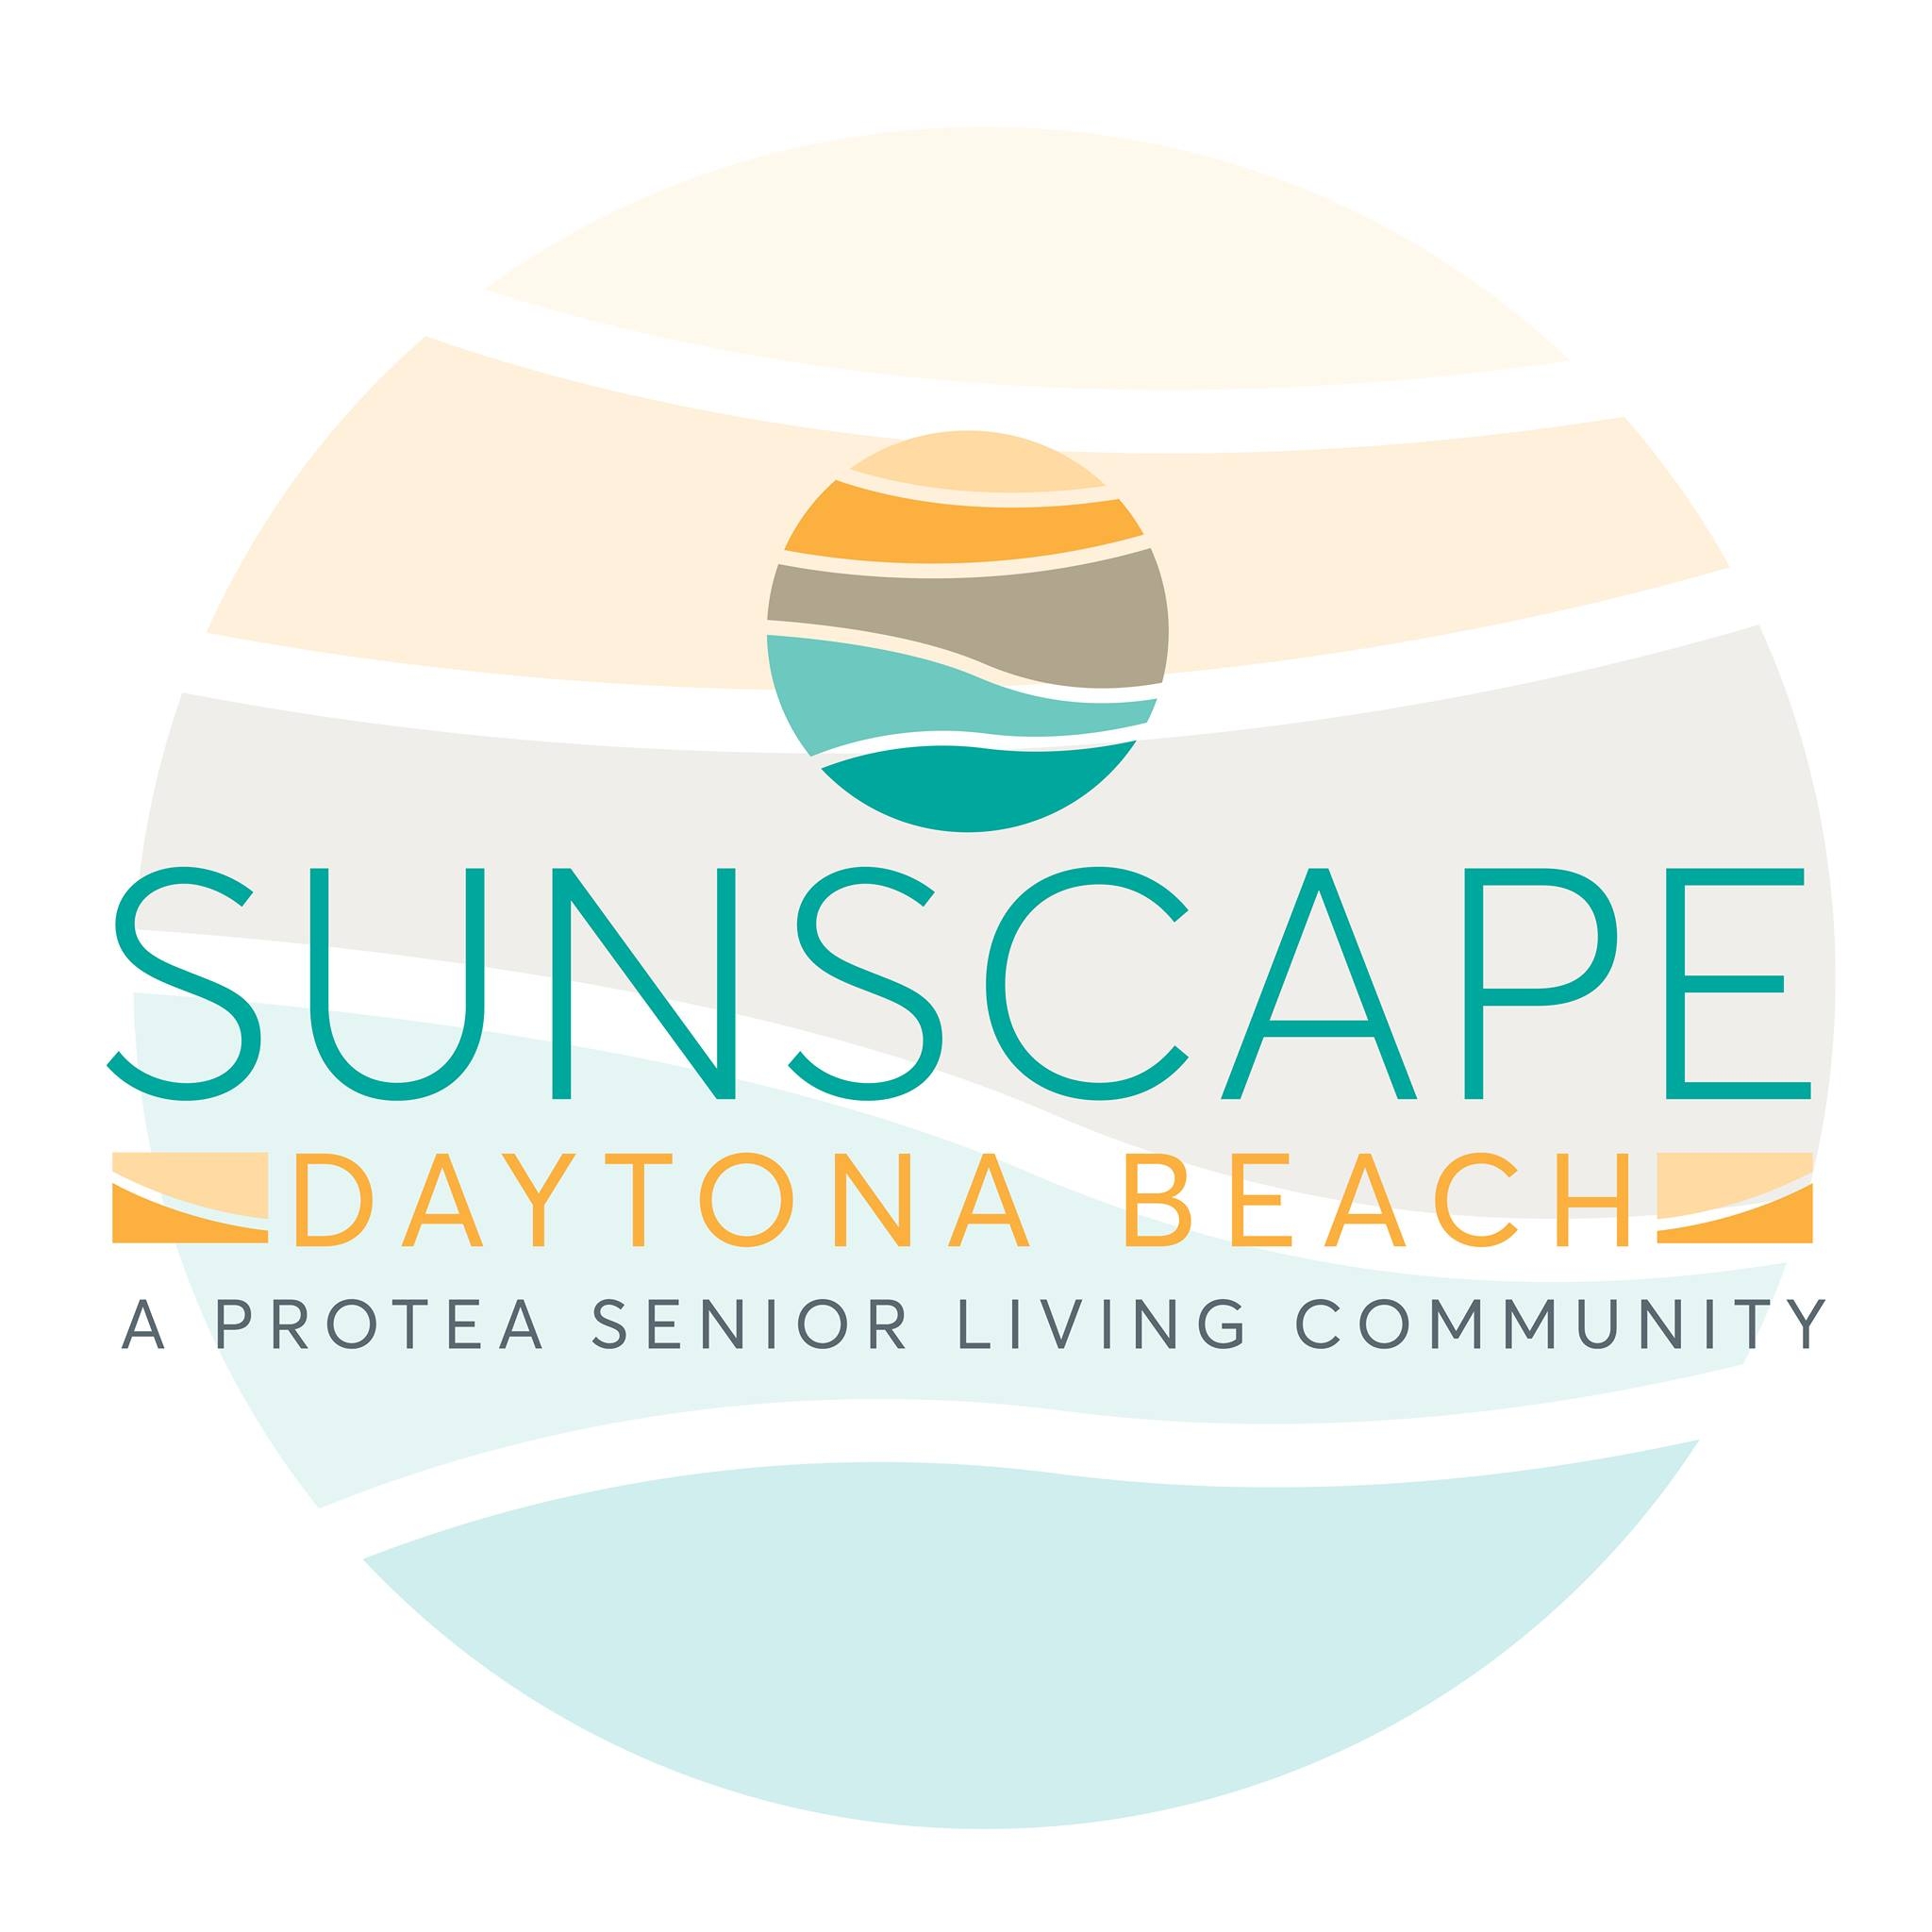 Sunscape Daytona Beach